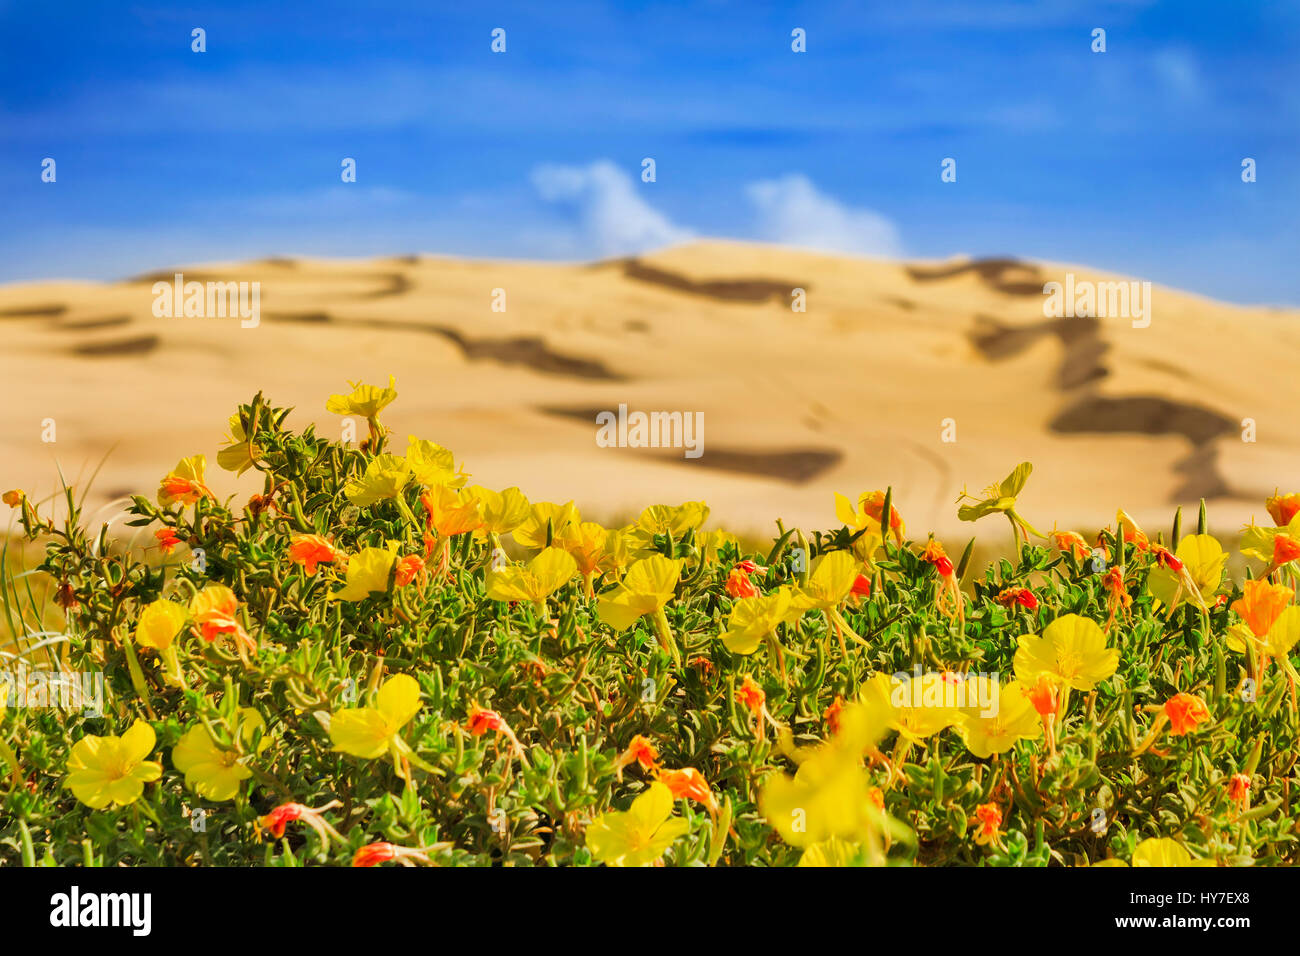 La floraison des fleurs rouge jaune en face de dunes de sable arides de Stockton Beach, NSW côte du Pacifique, l'Australie. Banque D'Images